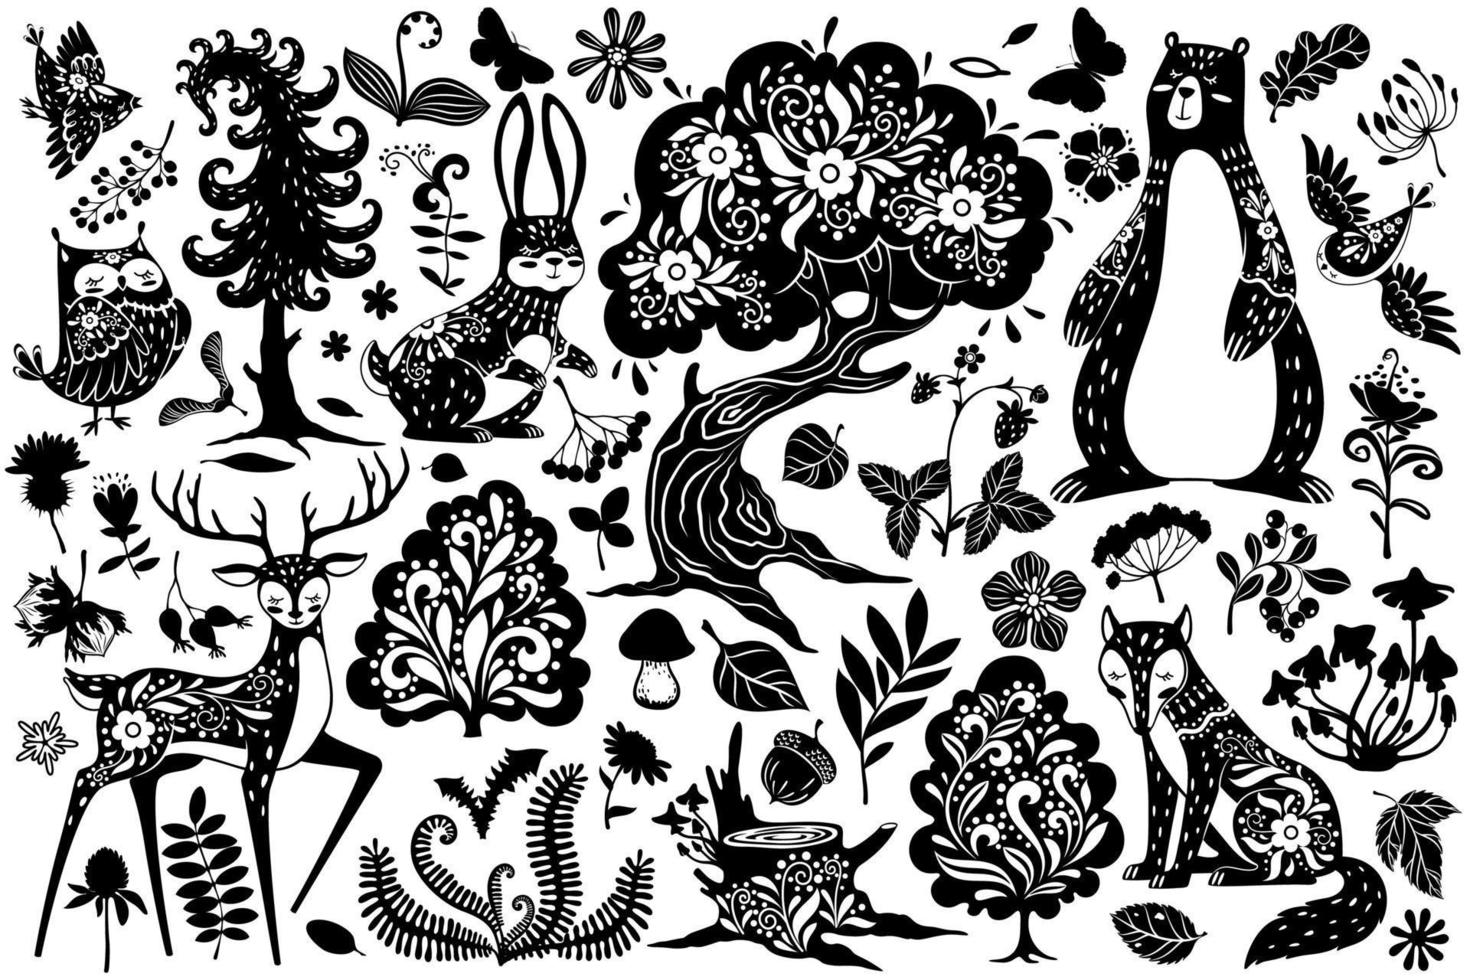 escandinavo floresta elementos. nórdico Scandi estilo cervo, lebre e urso, coruja e Raposa, pássaro e carvalho árvore, cogumelo e folhas, samambaia vetor conjunto